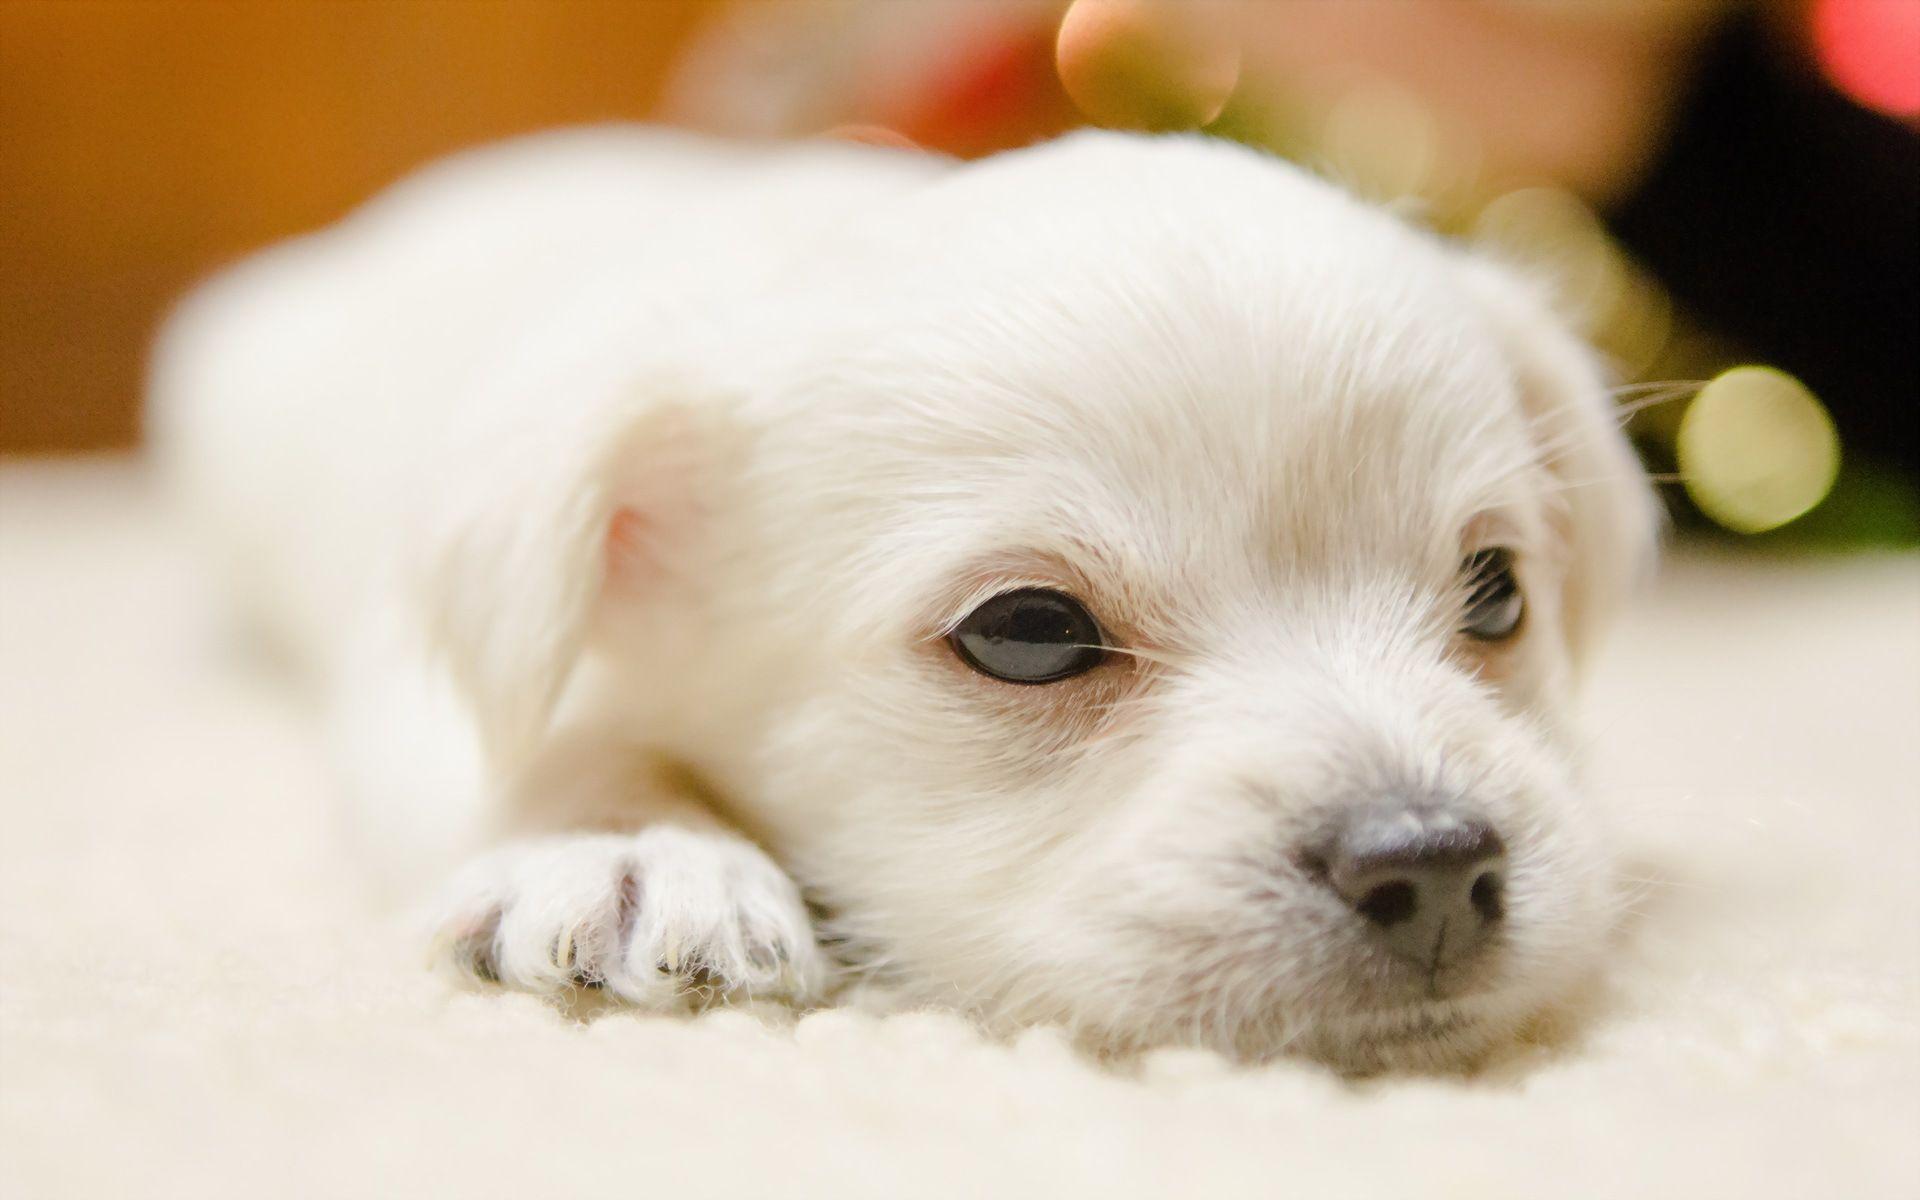 Cute Dogs Wallpaper. Dog Puppy Desktop Wallpaper